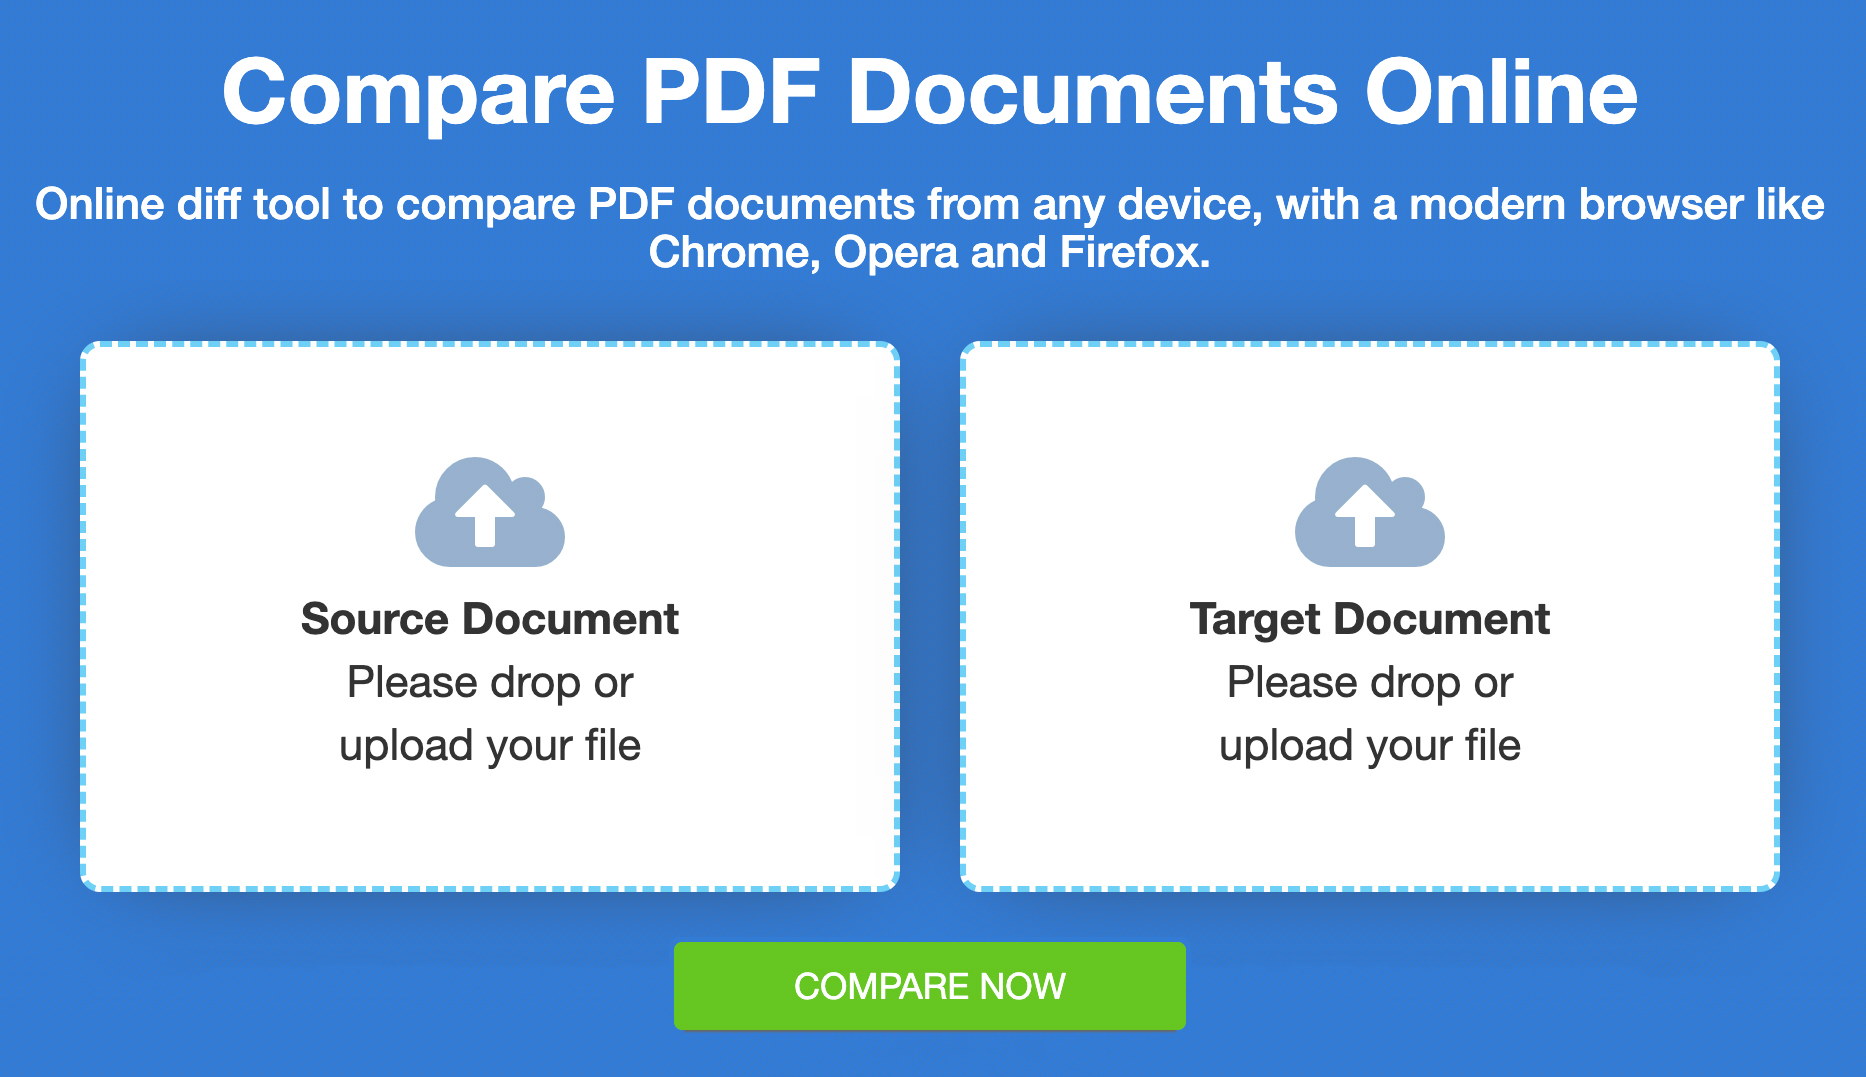 Comparer des fichiers PDF - Comparaison gratuite en ligne